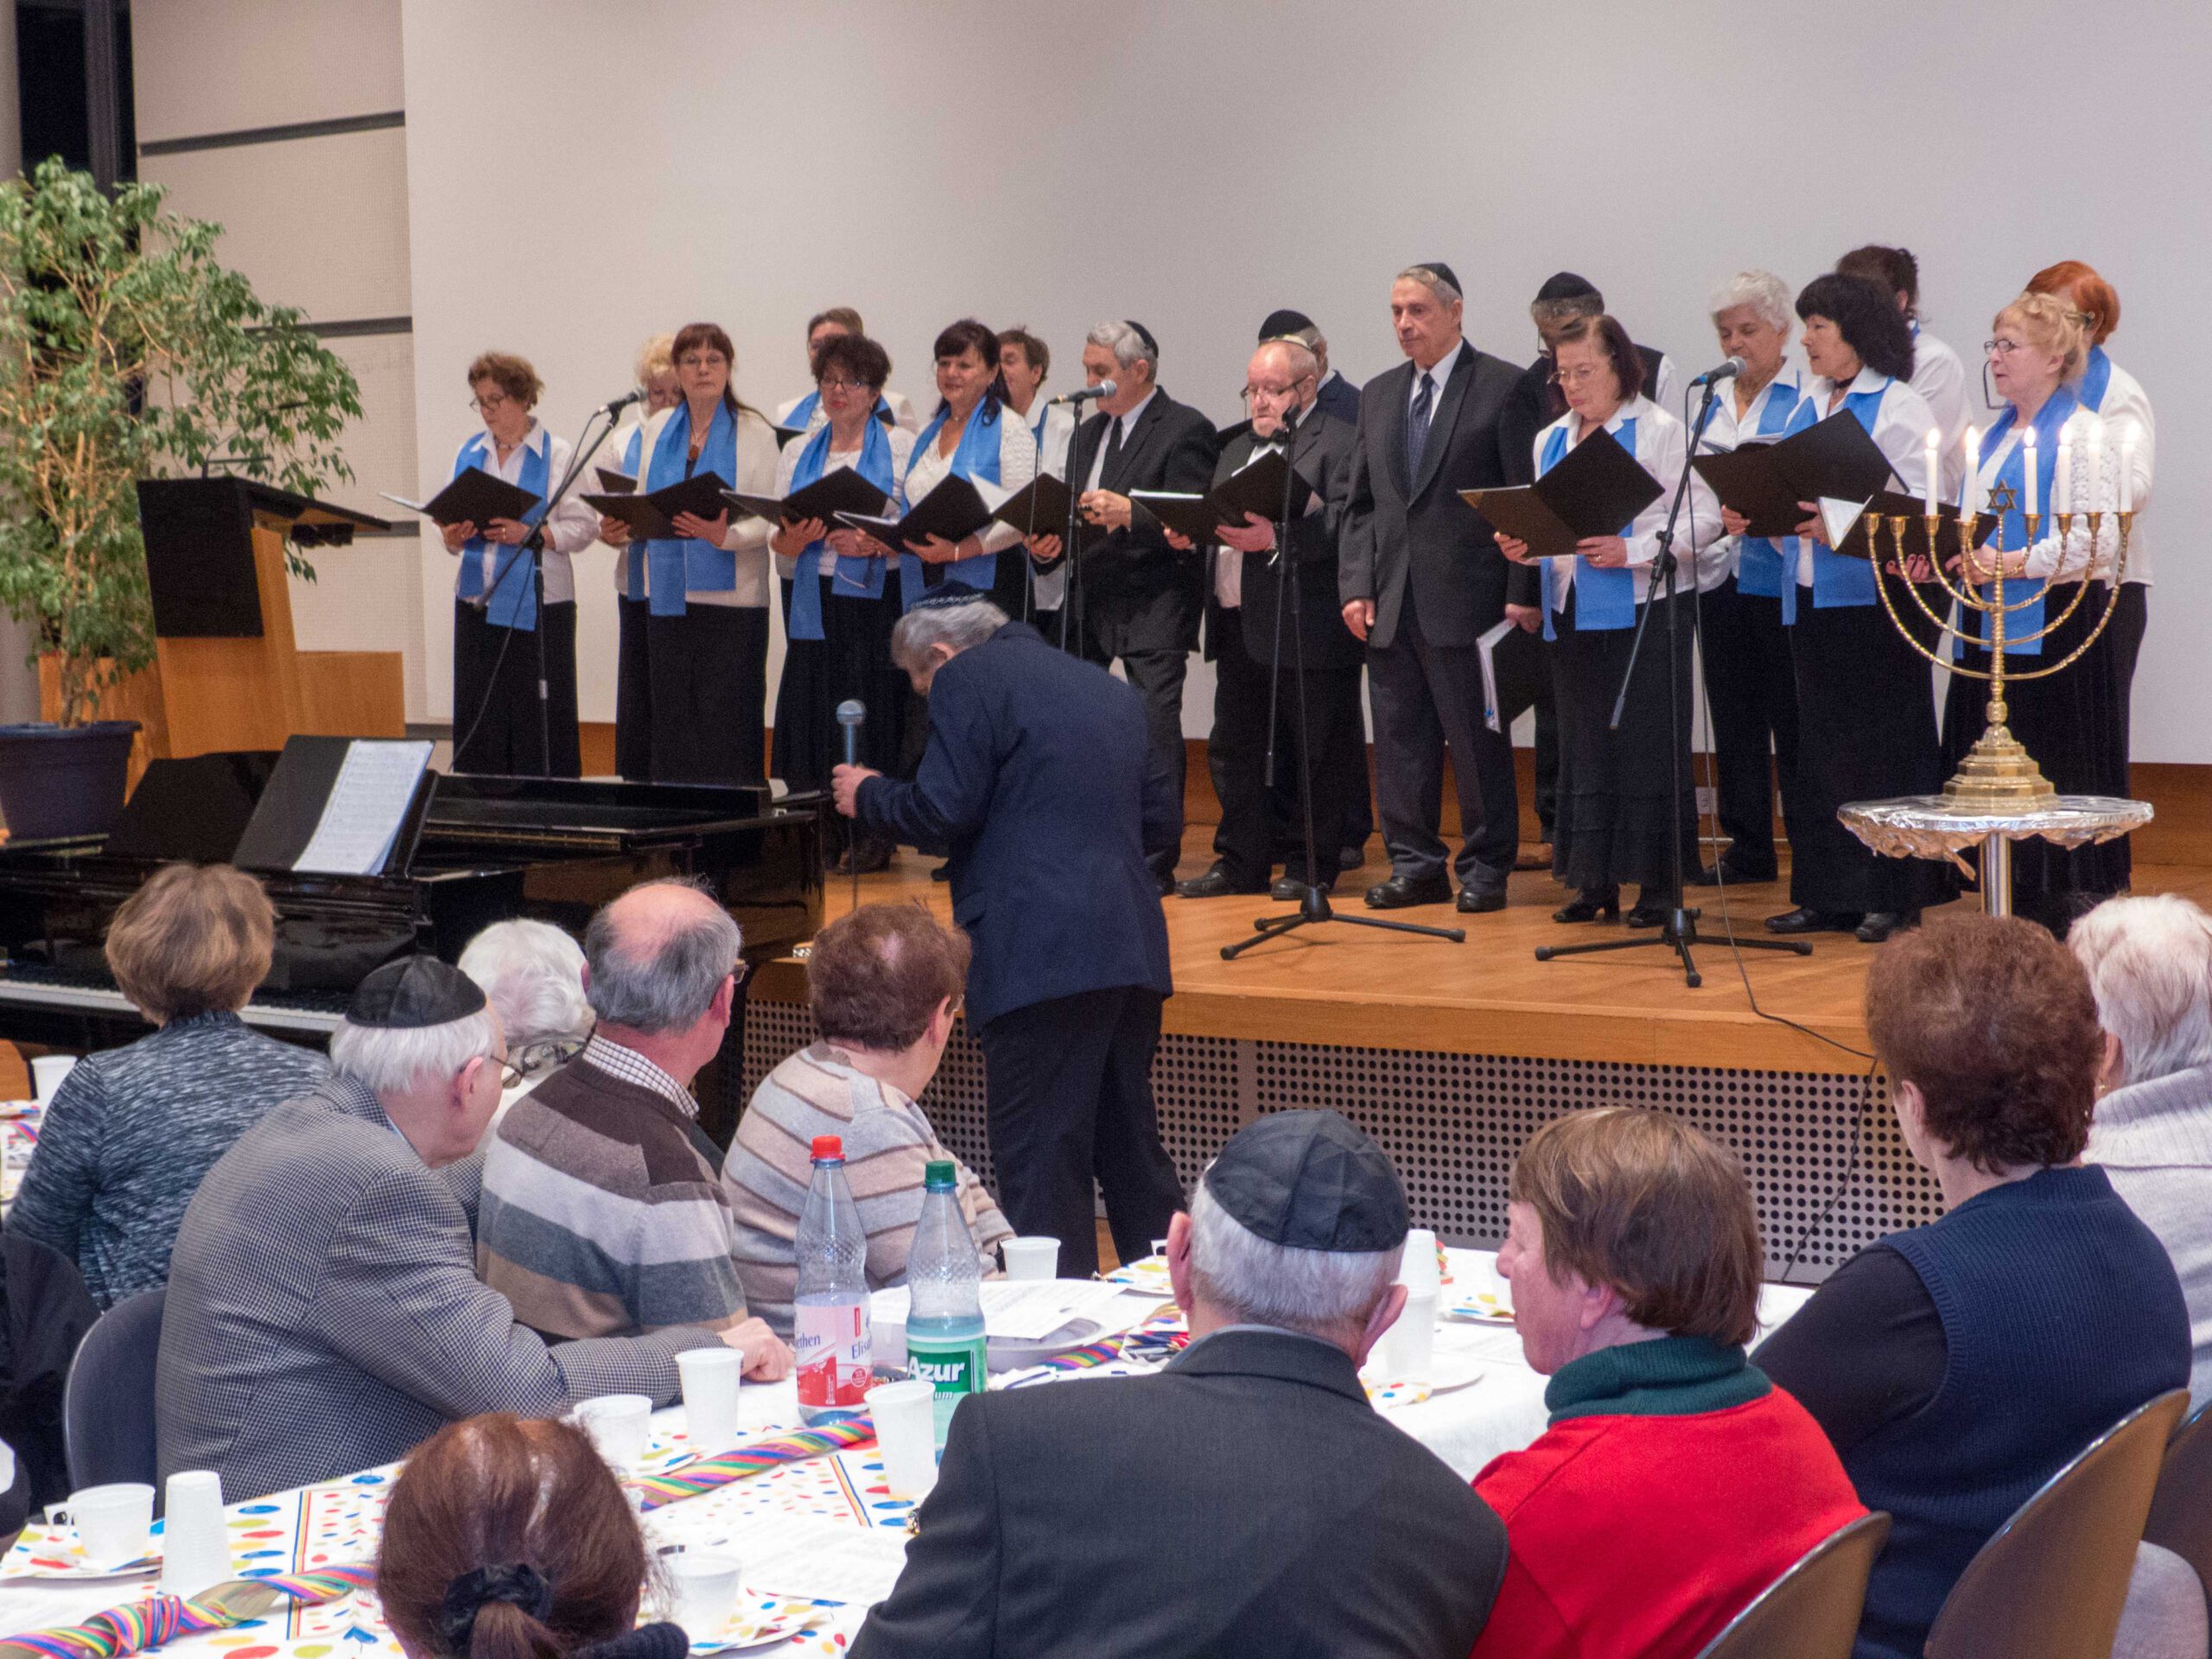 Chorale de la communauté juive de Wiesbaden. Photographe : Igor Eisenschtat. Collection de la communauté juive de Wiesbaden